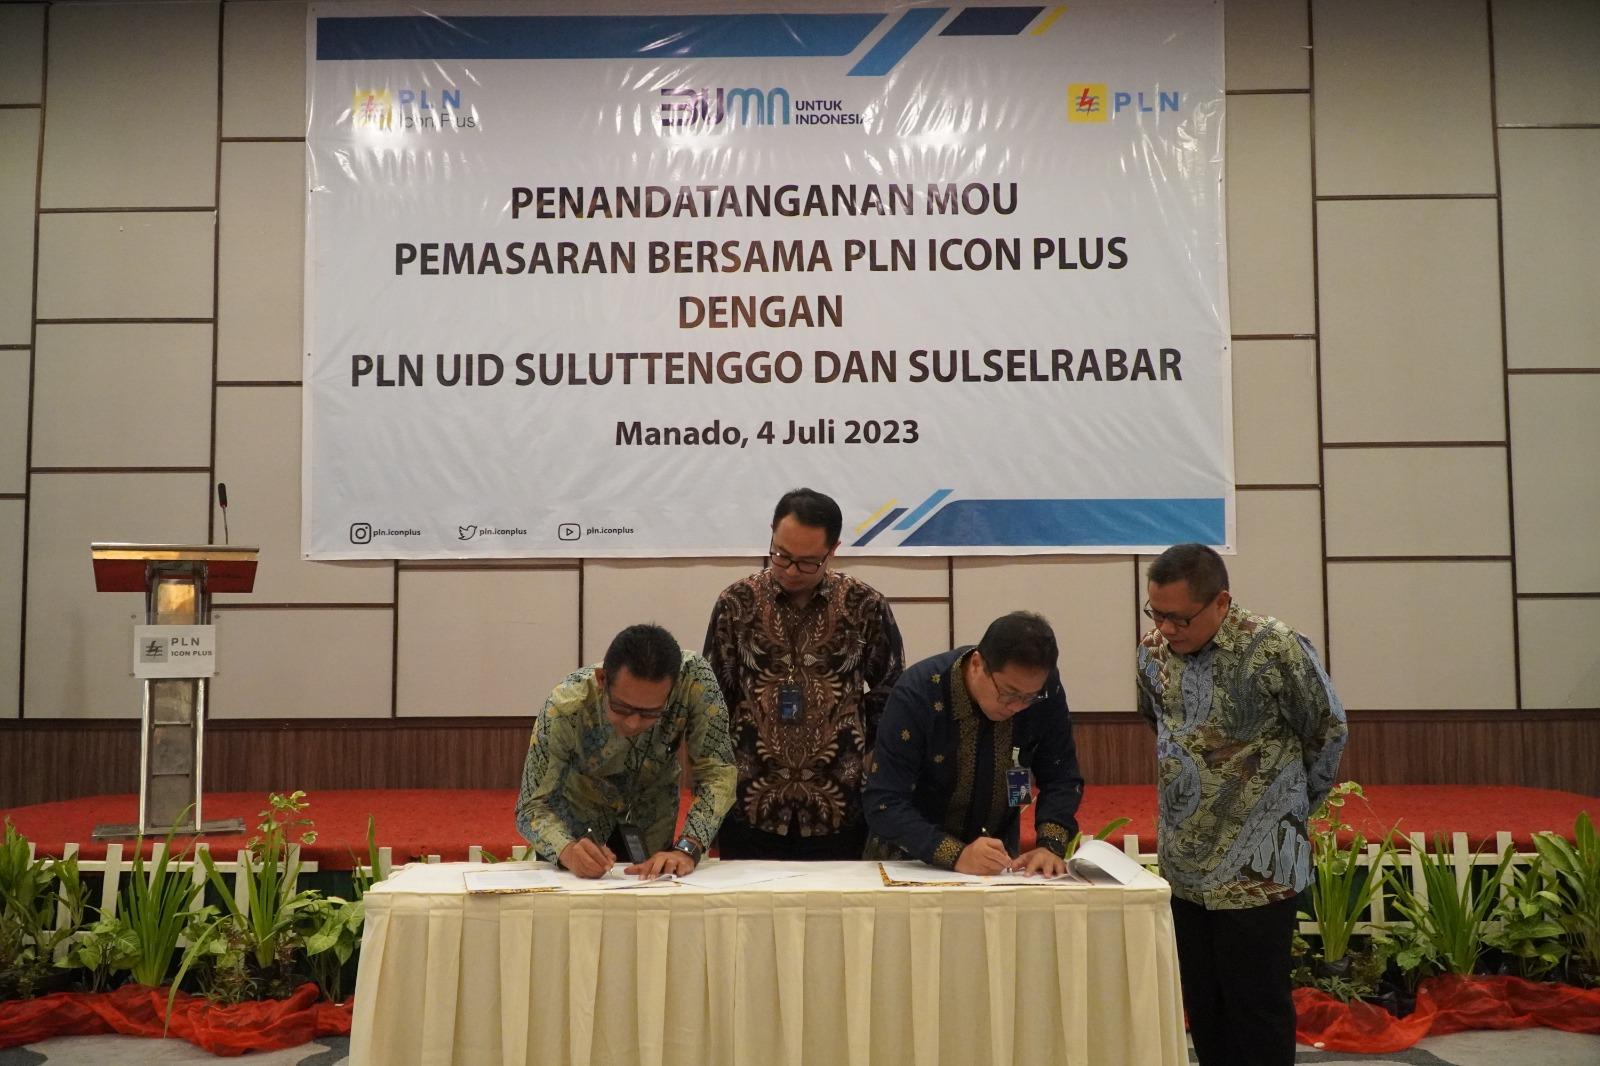 Penandatanganan MoU Pemasaran bersama PLN Icon Plus dengan PLN UID Suluttenggo dan Sulselrabar, Selasa (4/7/2023) di Manado.IST